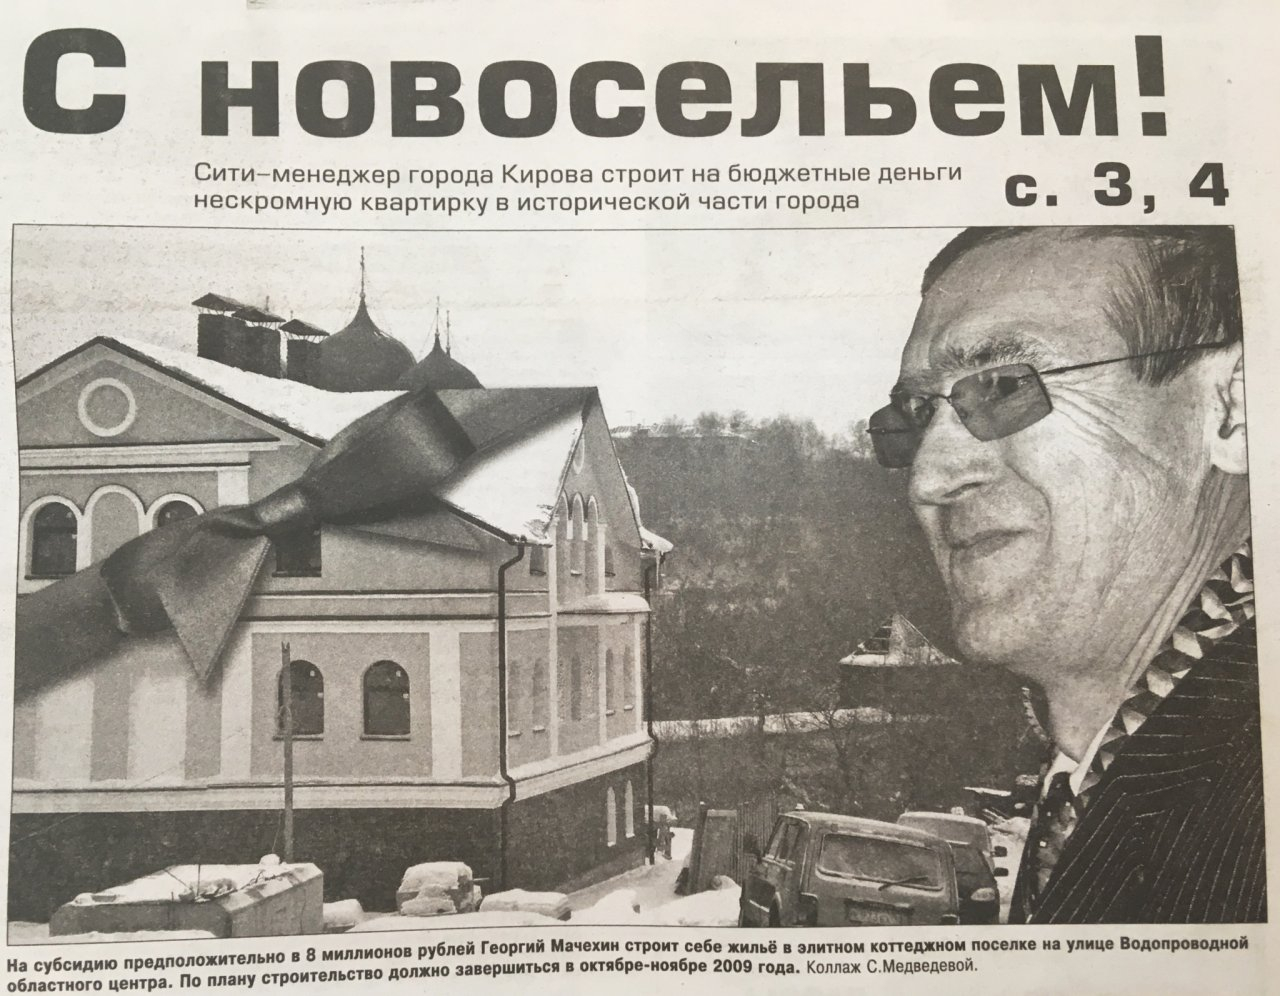 Праздник 23 февраля: о чем писали кировские газеты 30, 20 и 10 лет назад